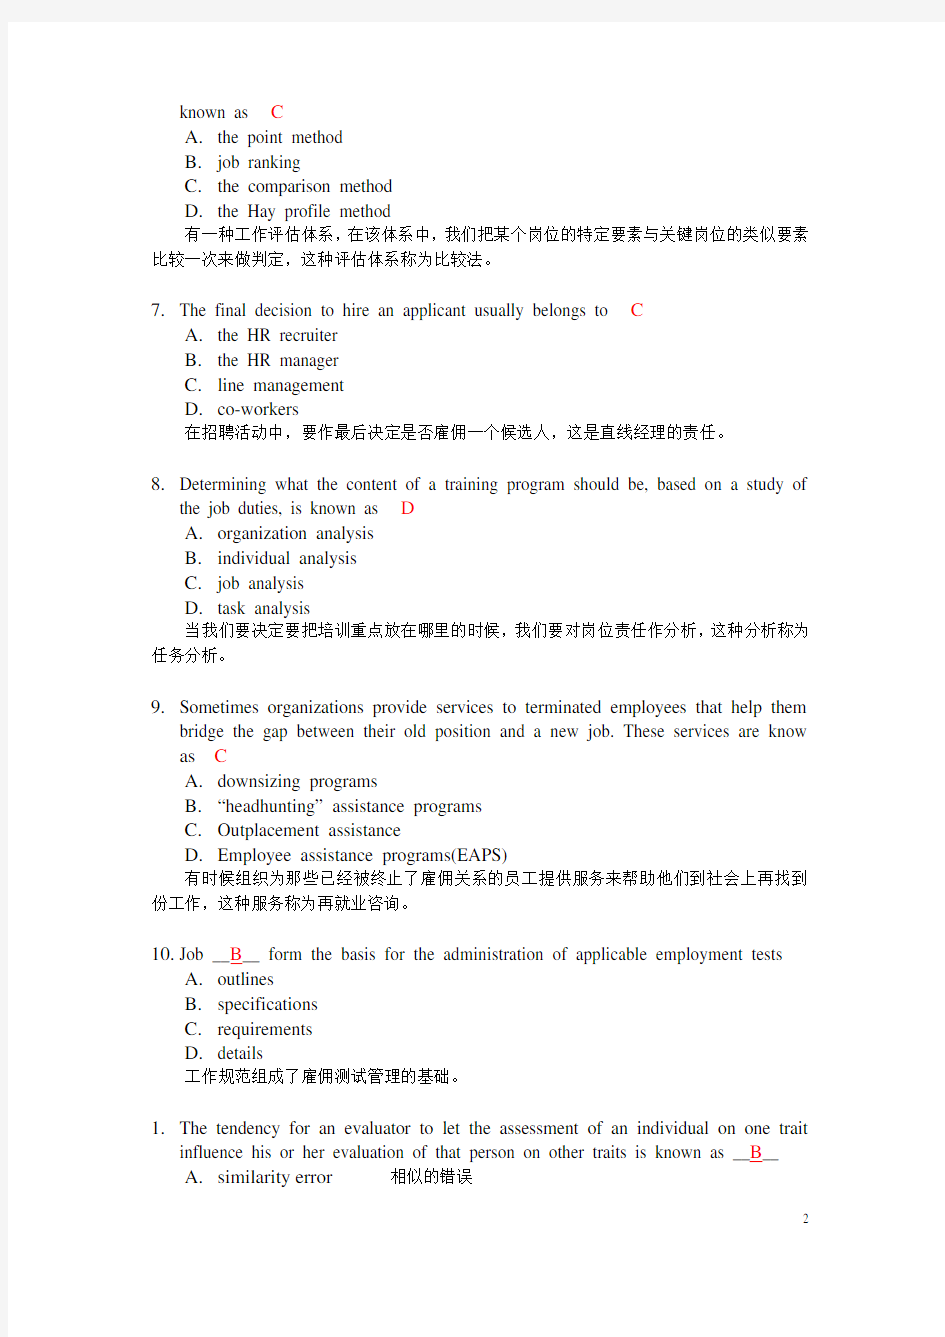 上海市人力资源三级考试英语单项选择汇总-附中文